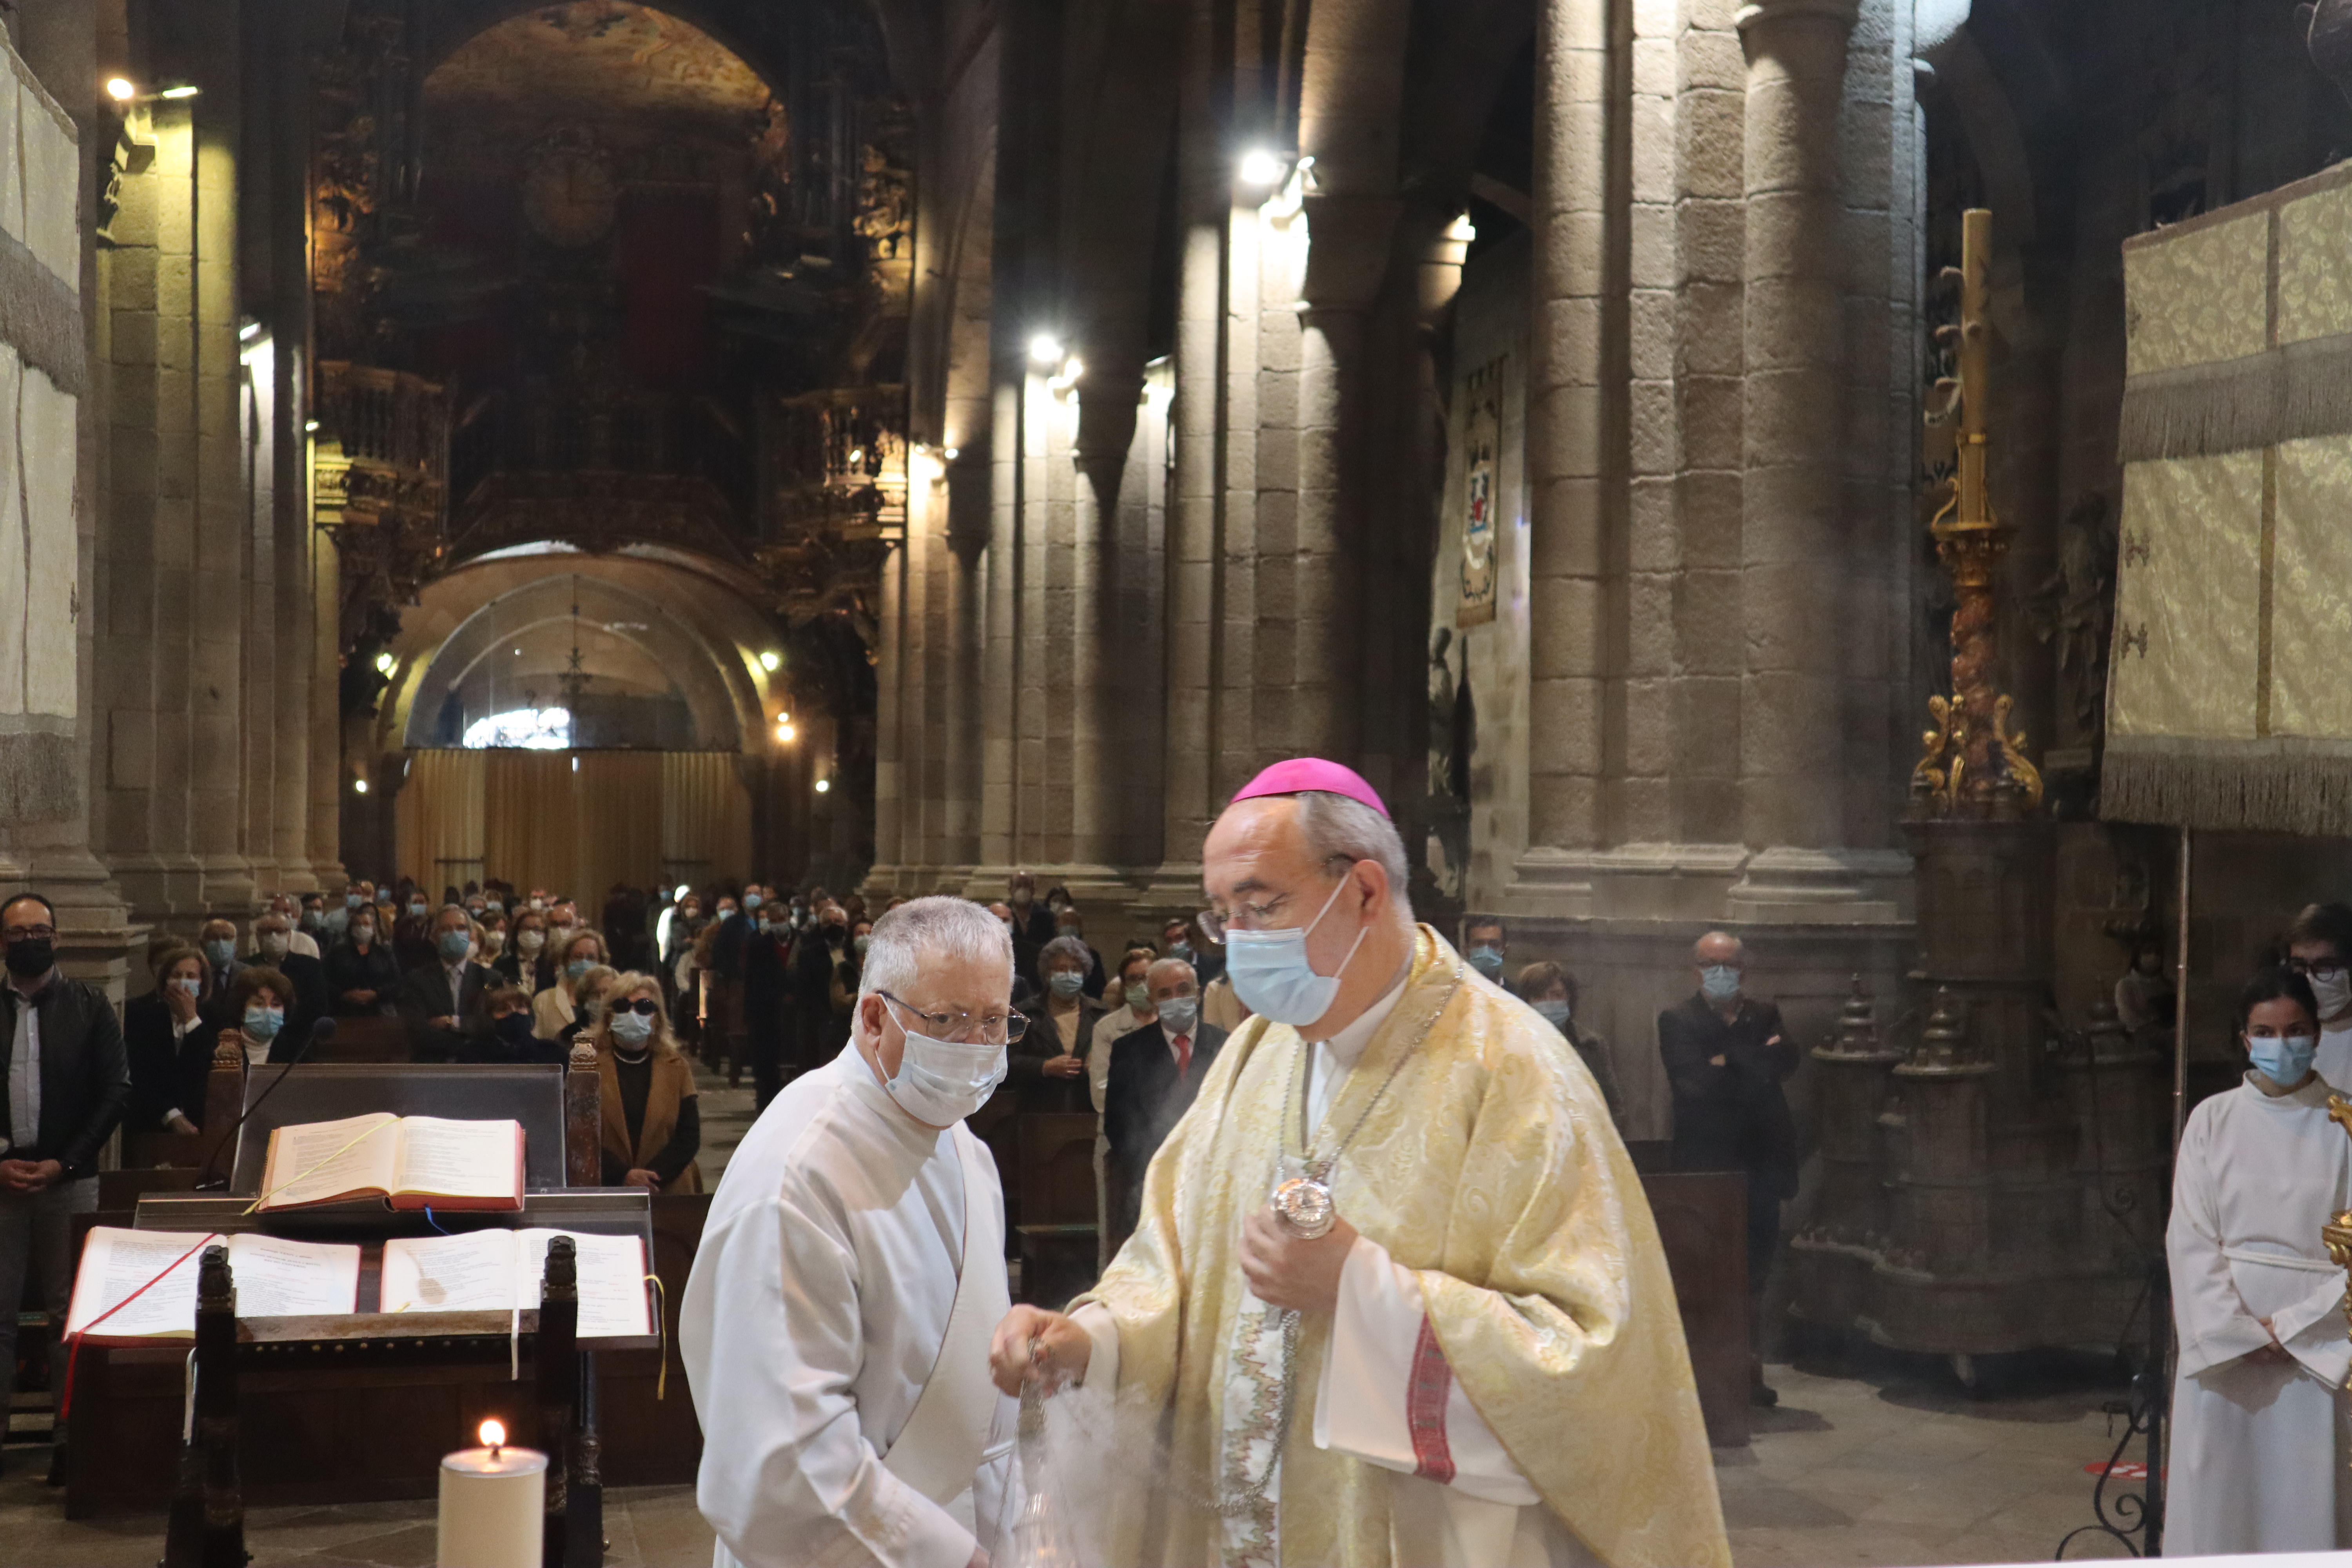 Arcebispo de Braga rezou pelas vítimas e alerta para aumento da depressão devido à pandemia